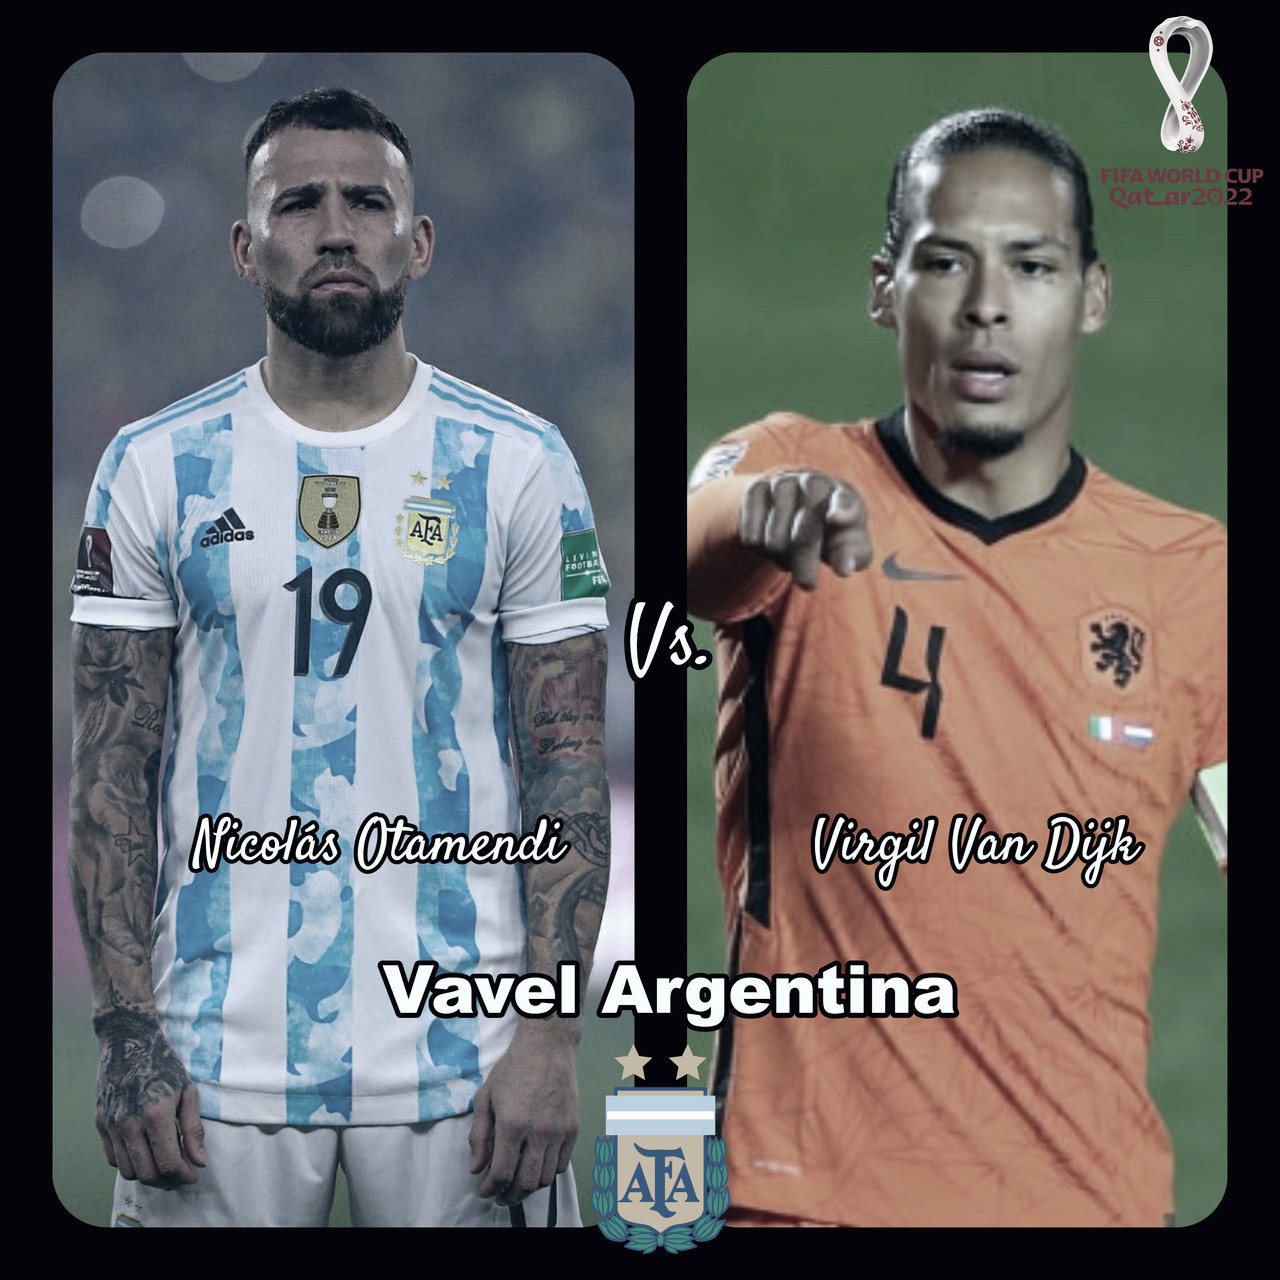 Cara a cara: Nicolás Otamendi Vs Virgil Van Dijk - VAVEL Argentina